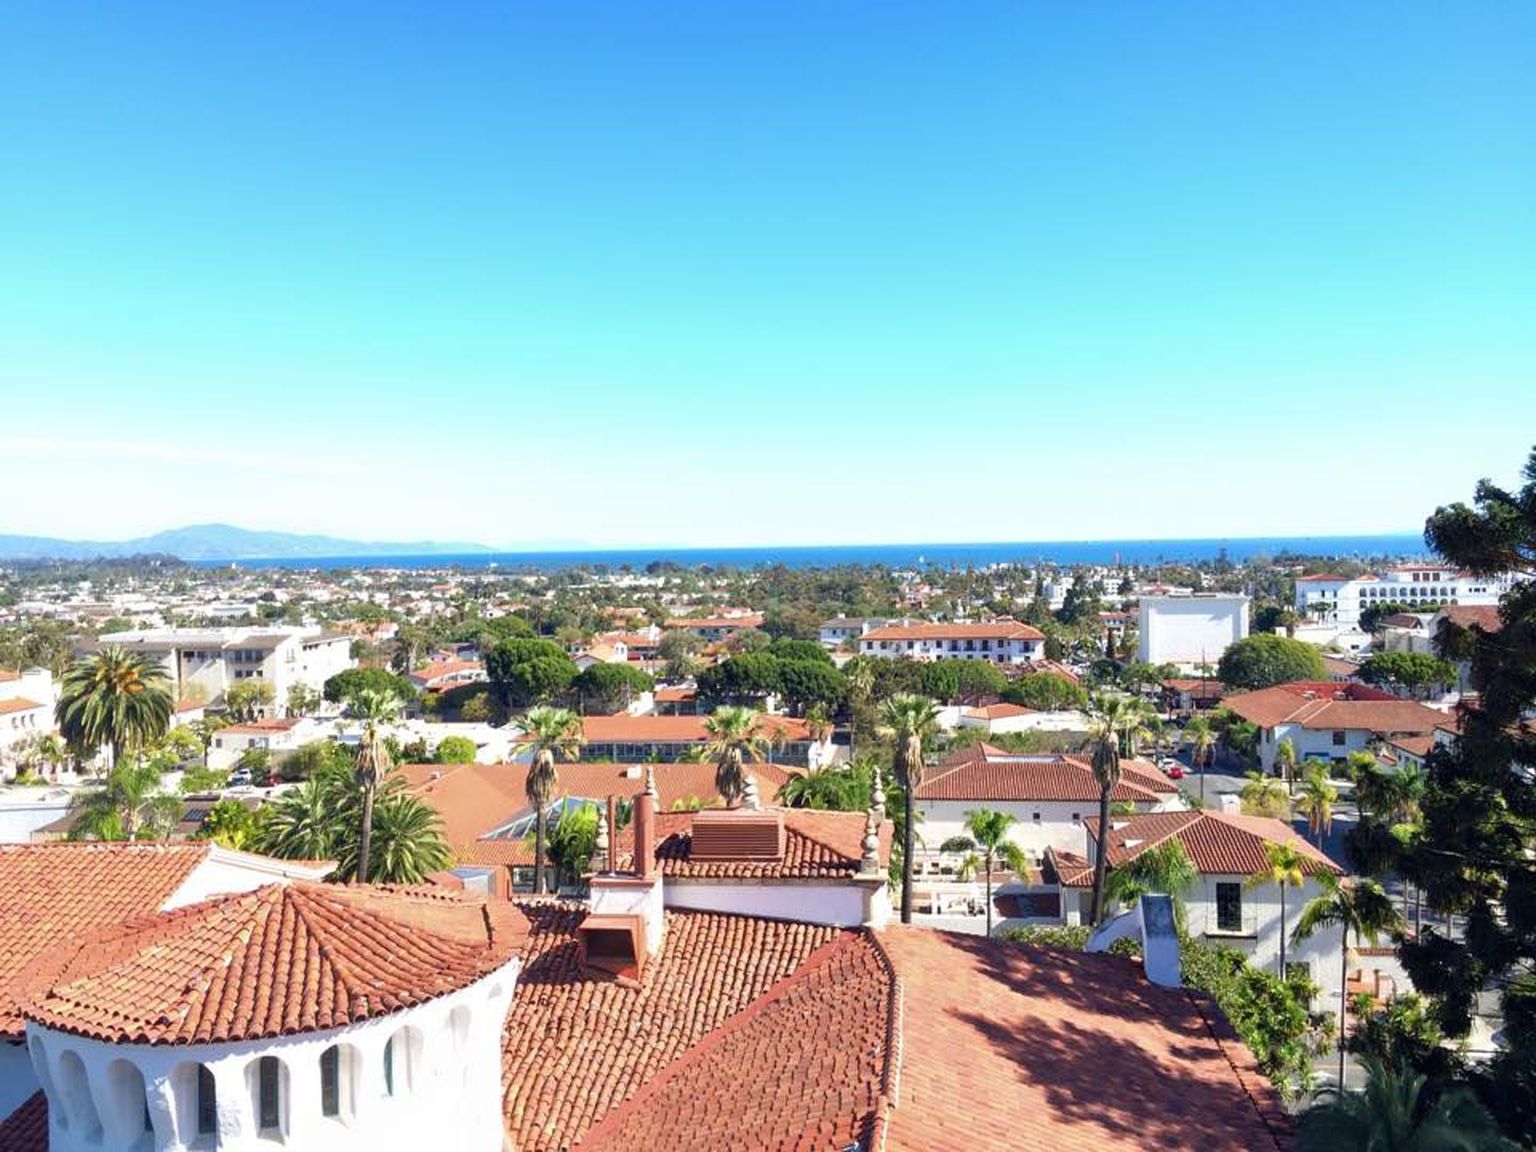 Santa Barbara: linnavalitsuse tornist avaneb imeilus vaade linnale ja Vaiksele ookeanile.